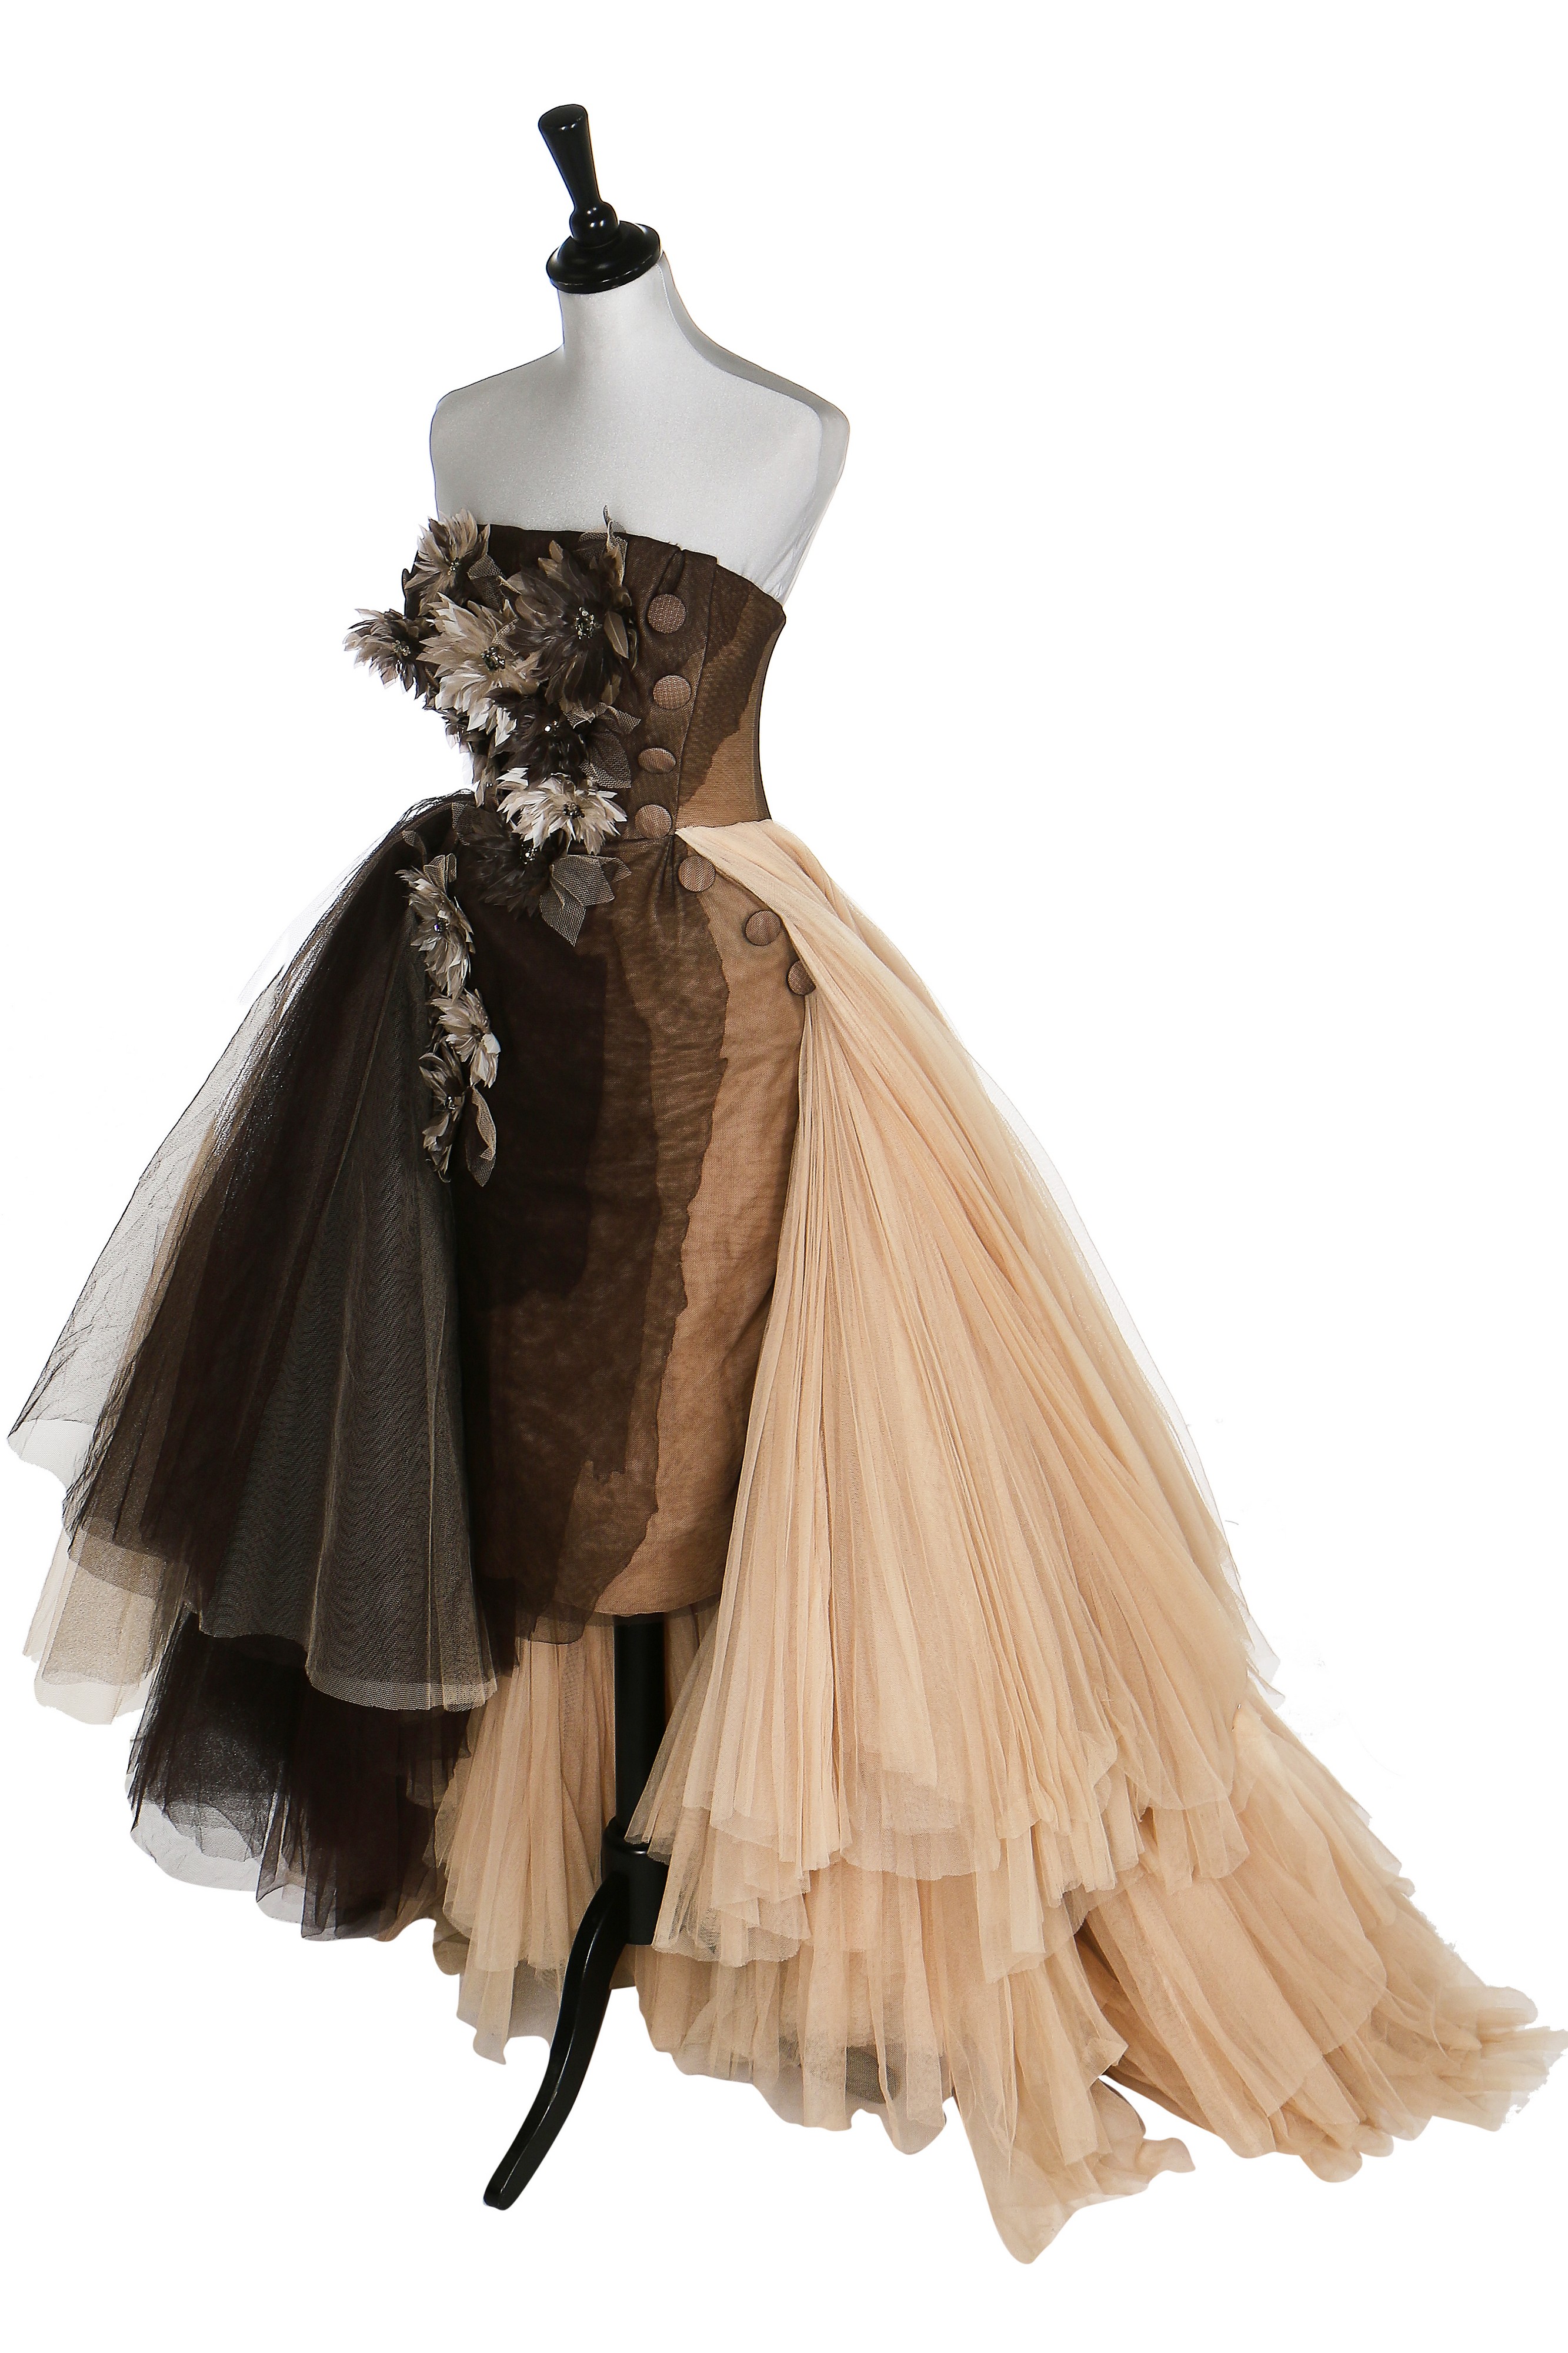 Thời trang cao cấp của Dior do John Galliano sáng tạo trong cuốn sách ảnh  mới do Assouline xuất bản  Style Magazine